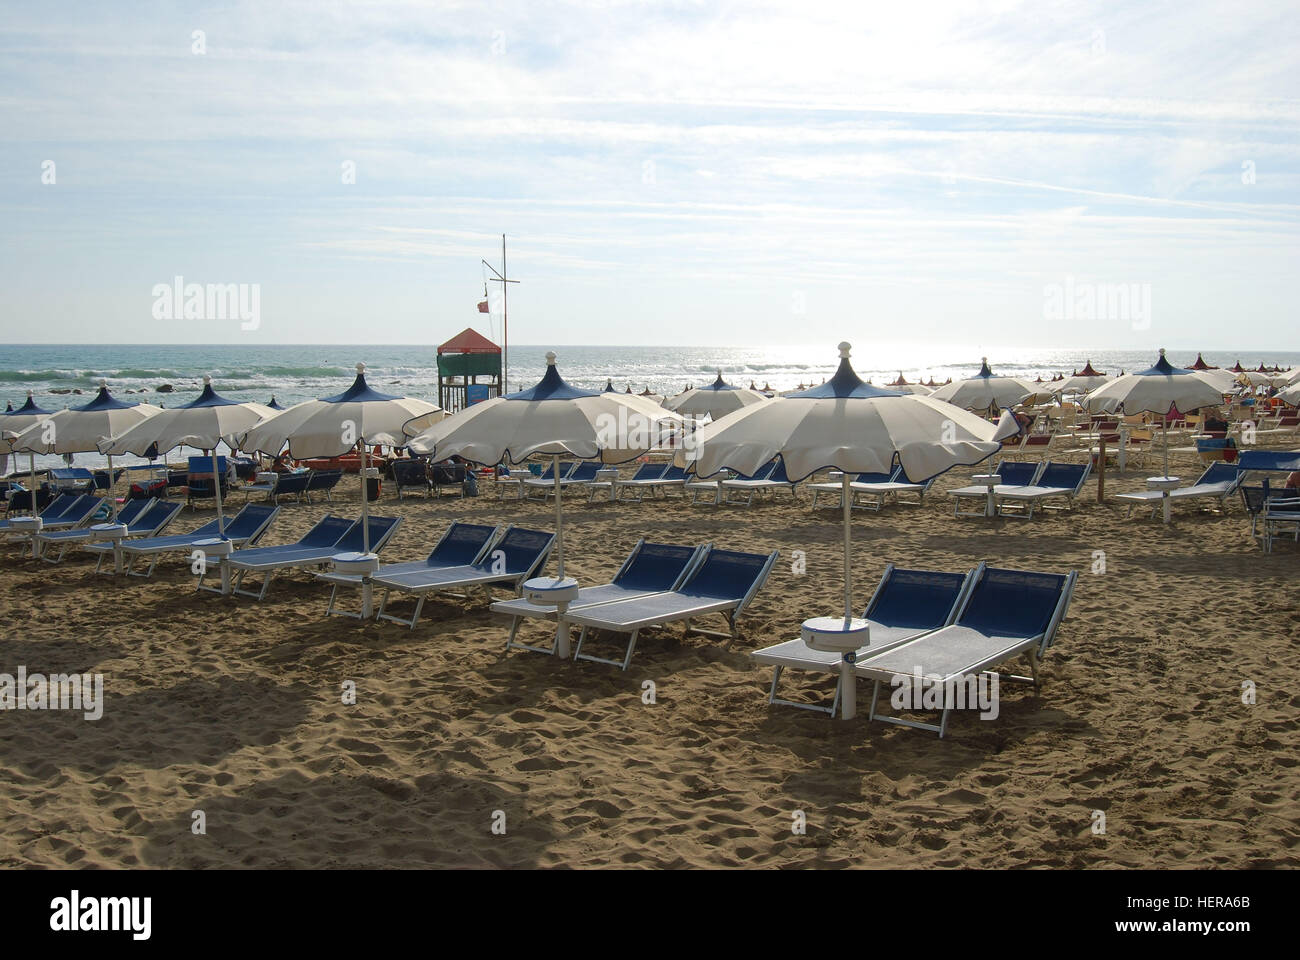 Aufgreihte Strandliegen und Sonnenschirme in einem italienischen Strandbad bei Castiglione della Pescaia, Toskana Stock Photo